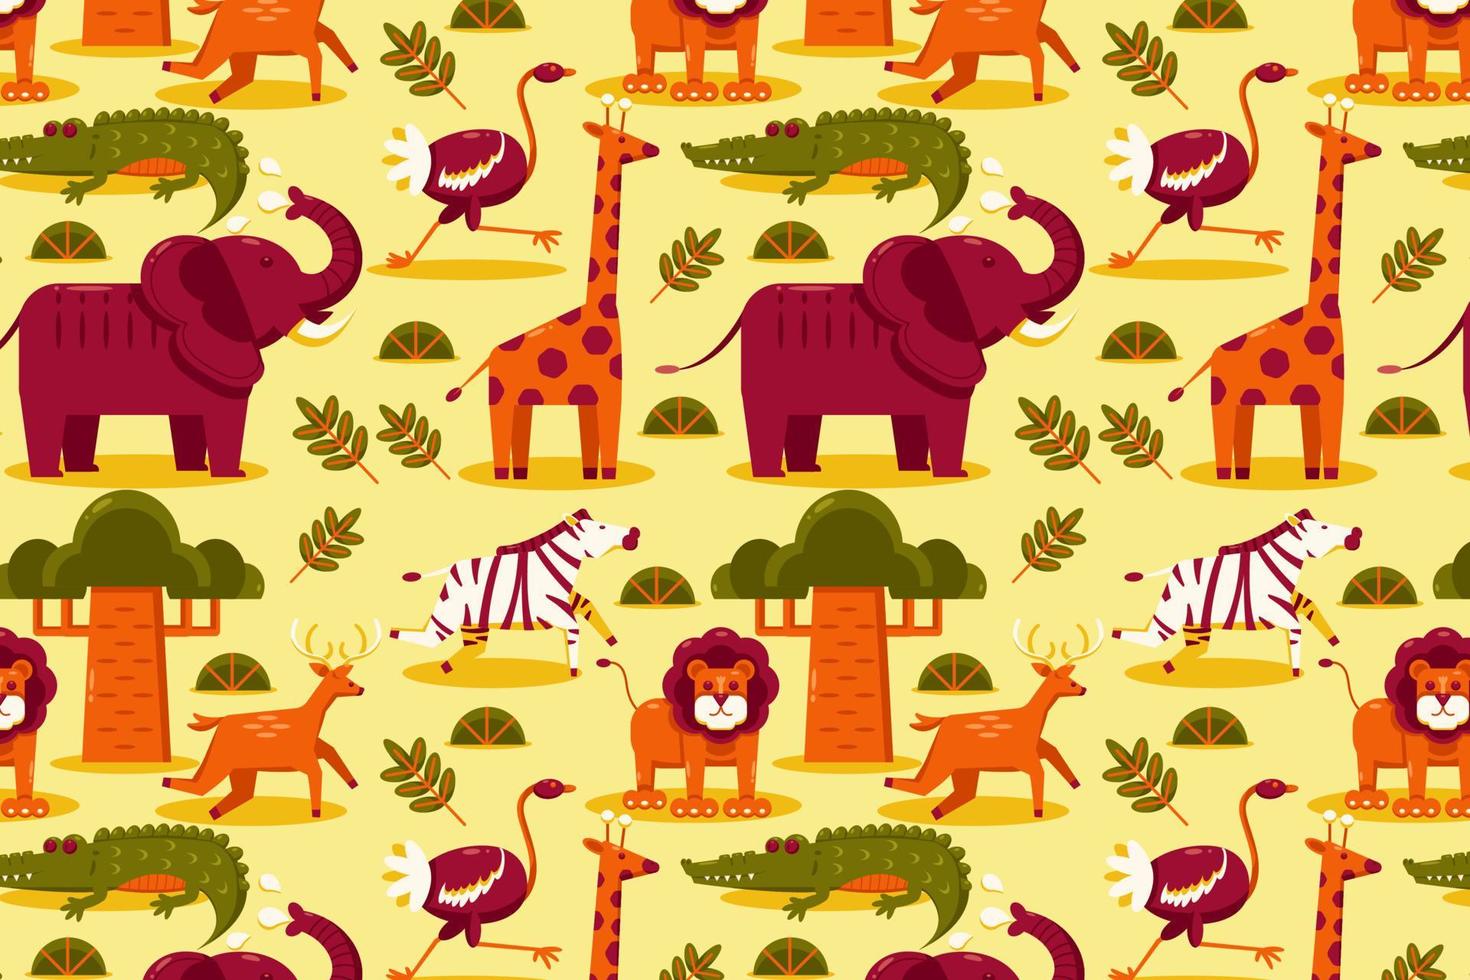 Afrikaanse dieren. patronen van olifant, leeuw, giraffe, gazelle, antilope, krokodil, struisvogel, en zebra vector